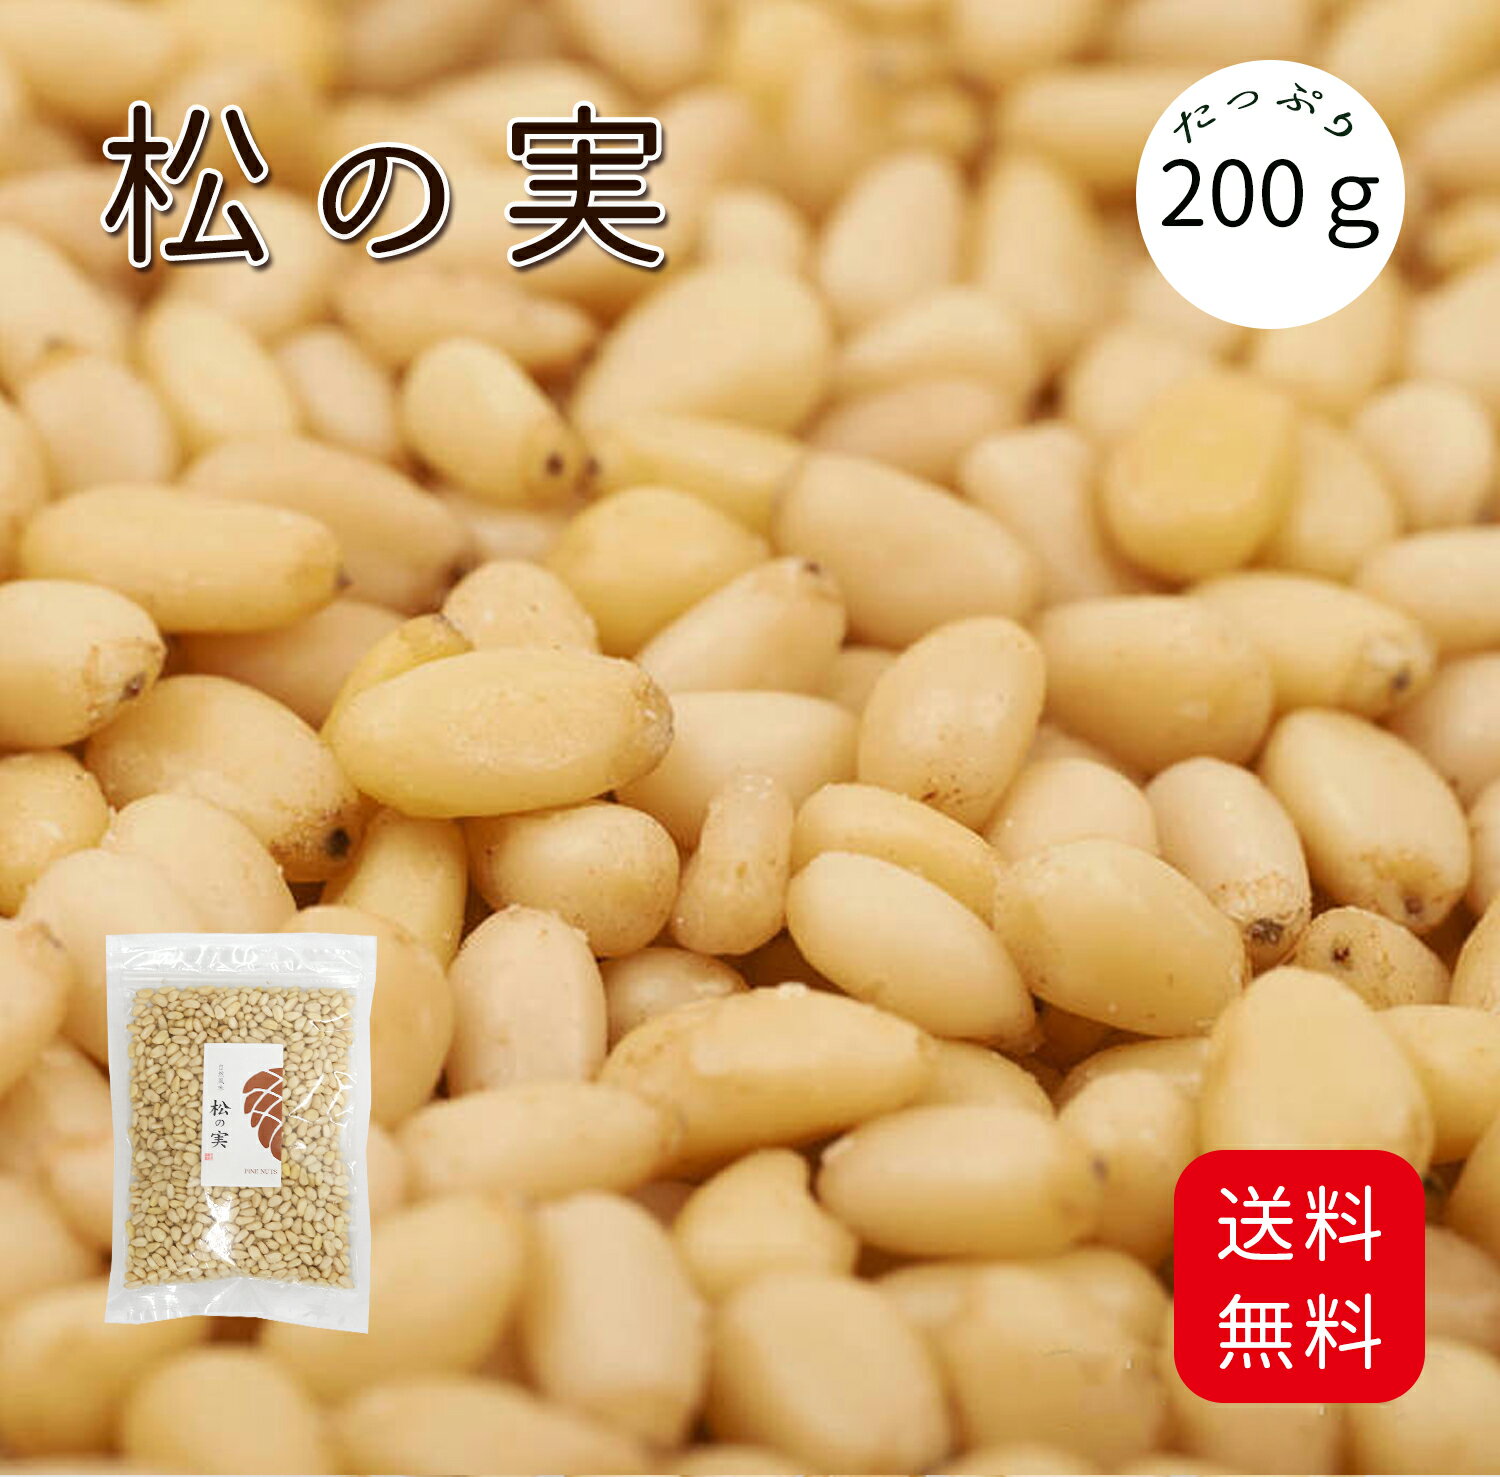 松の実 (1kg) 大粒 中国産 【送料無料】